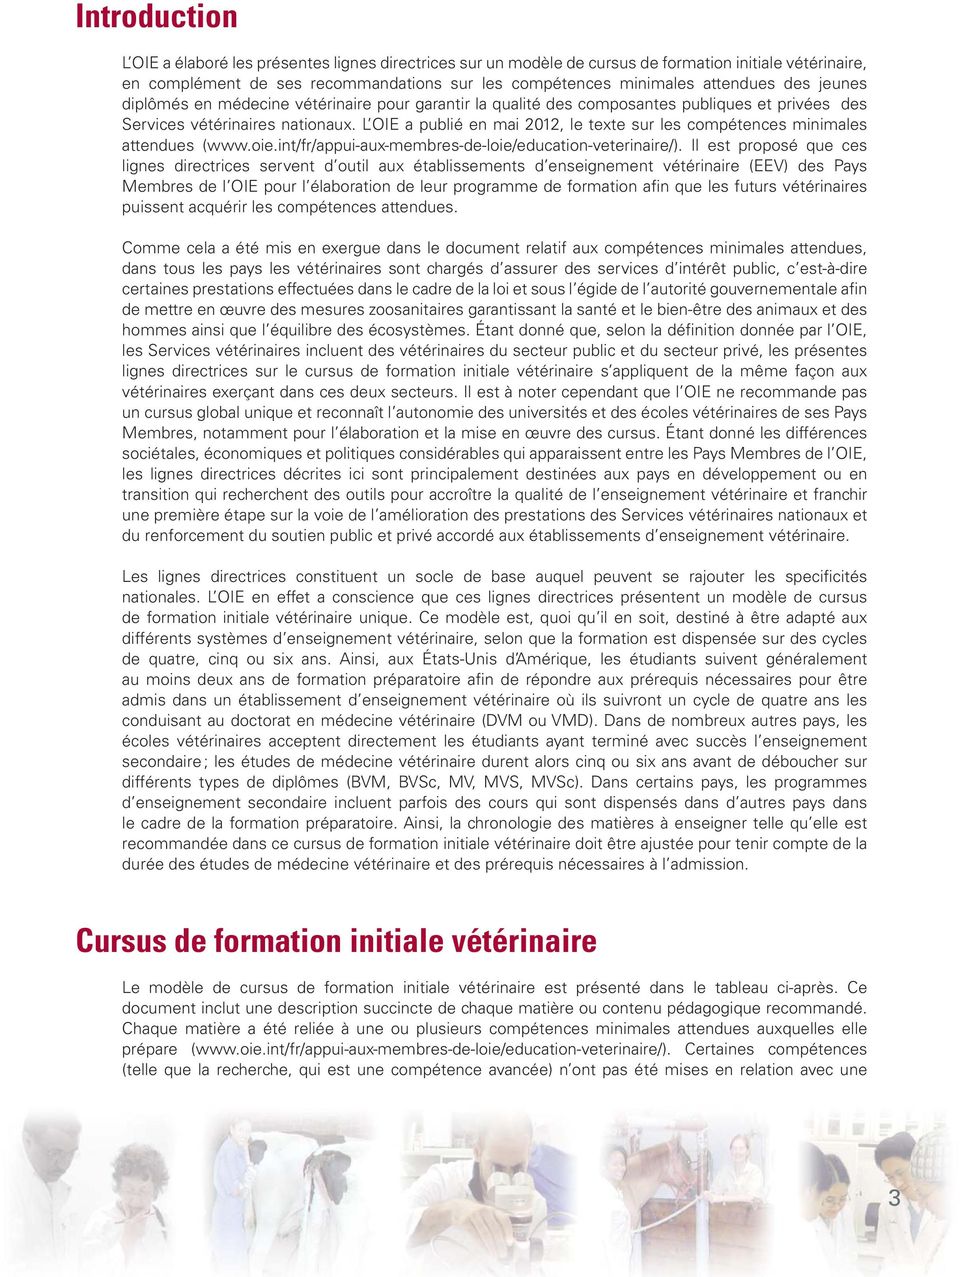 L OIE a publié en mai 2012, le texte sur les compétences minimales attendues (www.oie.int/fr/appui-aux-membres-de-loie/education-veterinaire/).